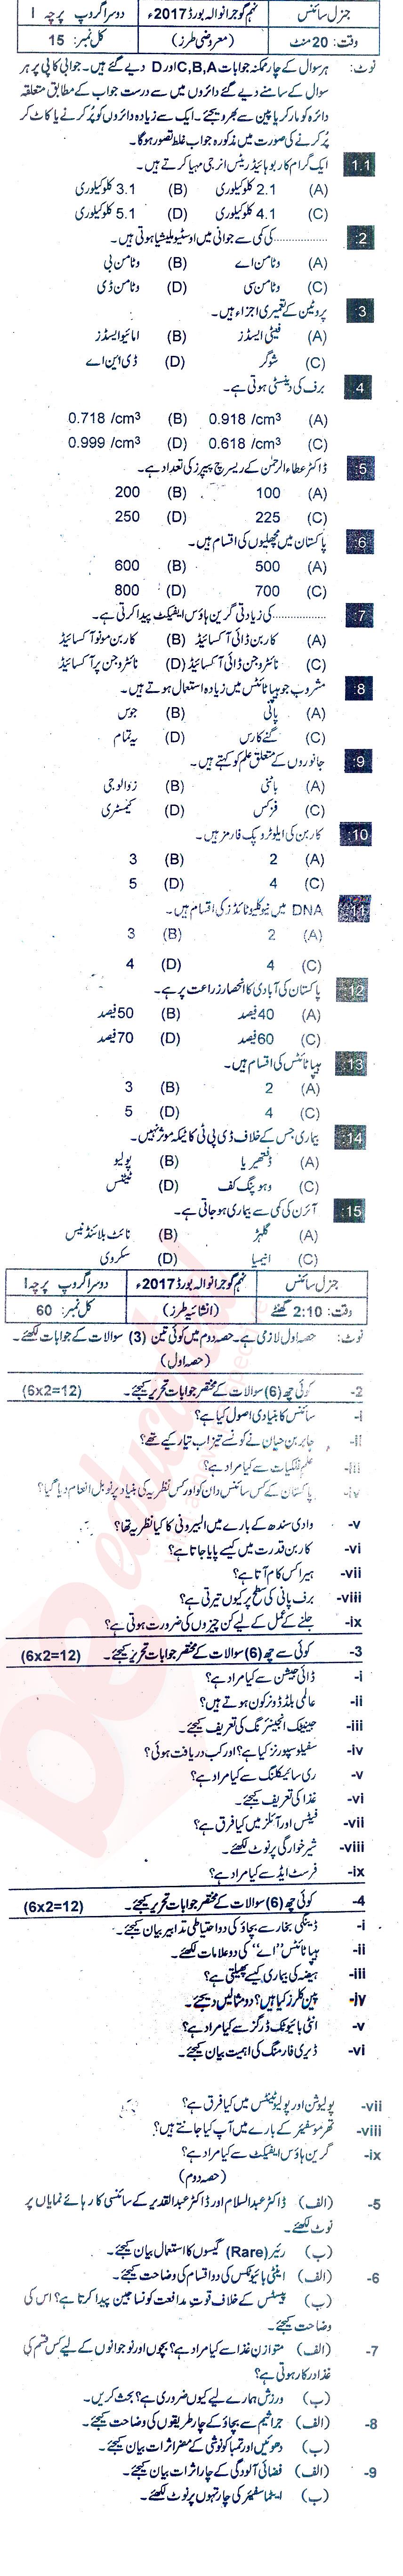 General Science 9th Urdu Medium Past Paper Group 2 BISE Gujranwala 2017